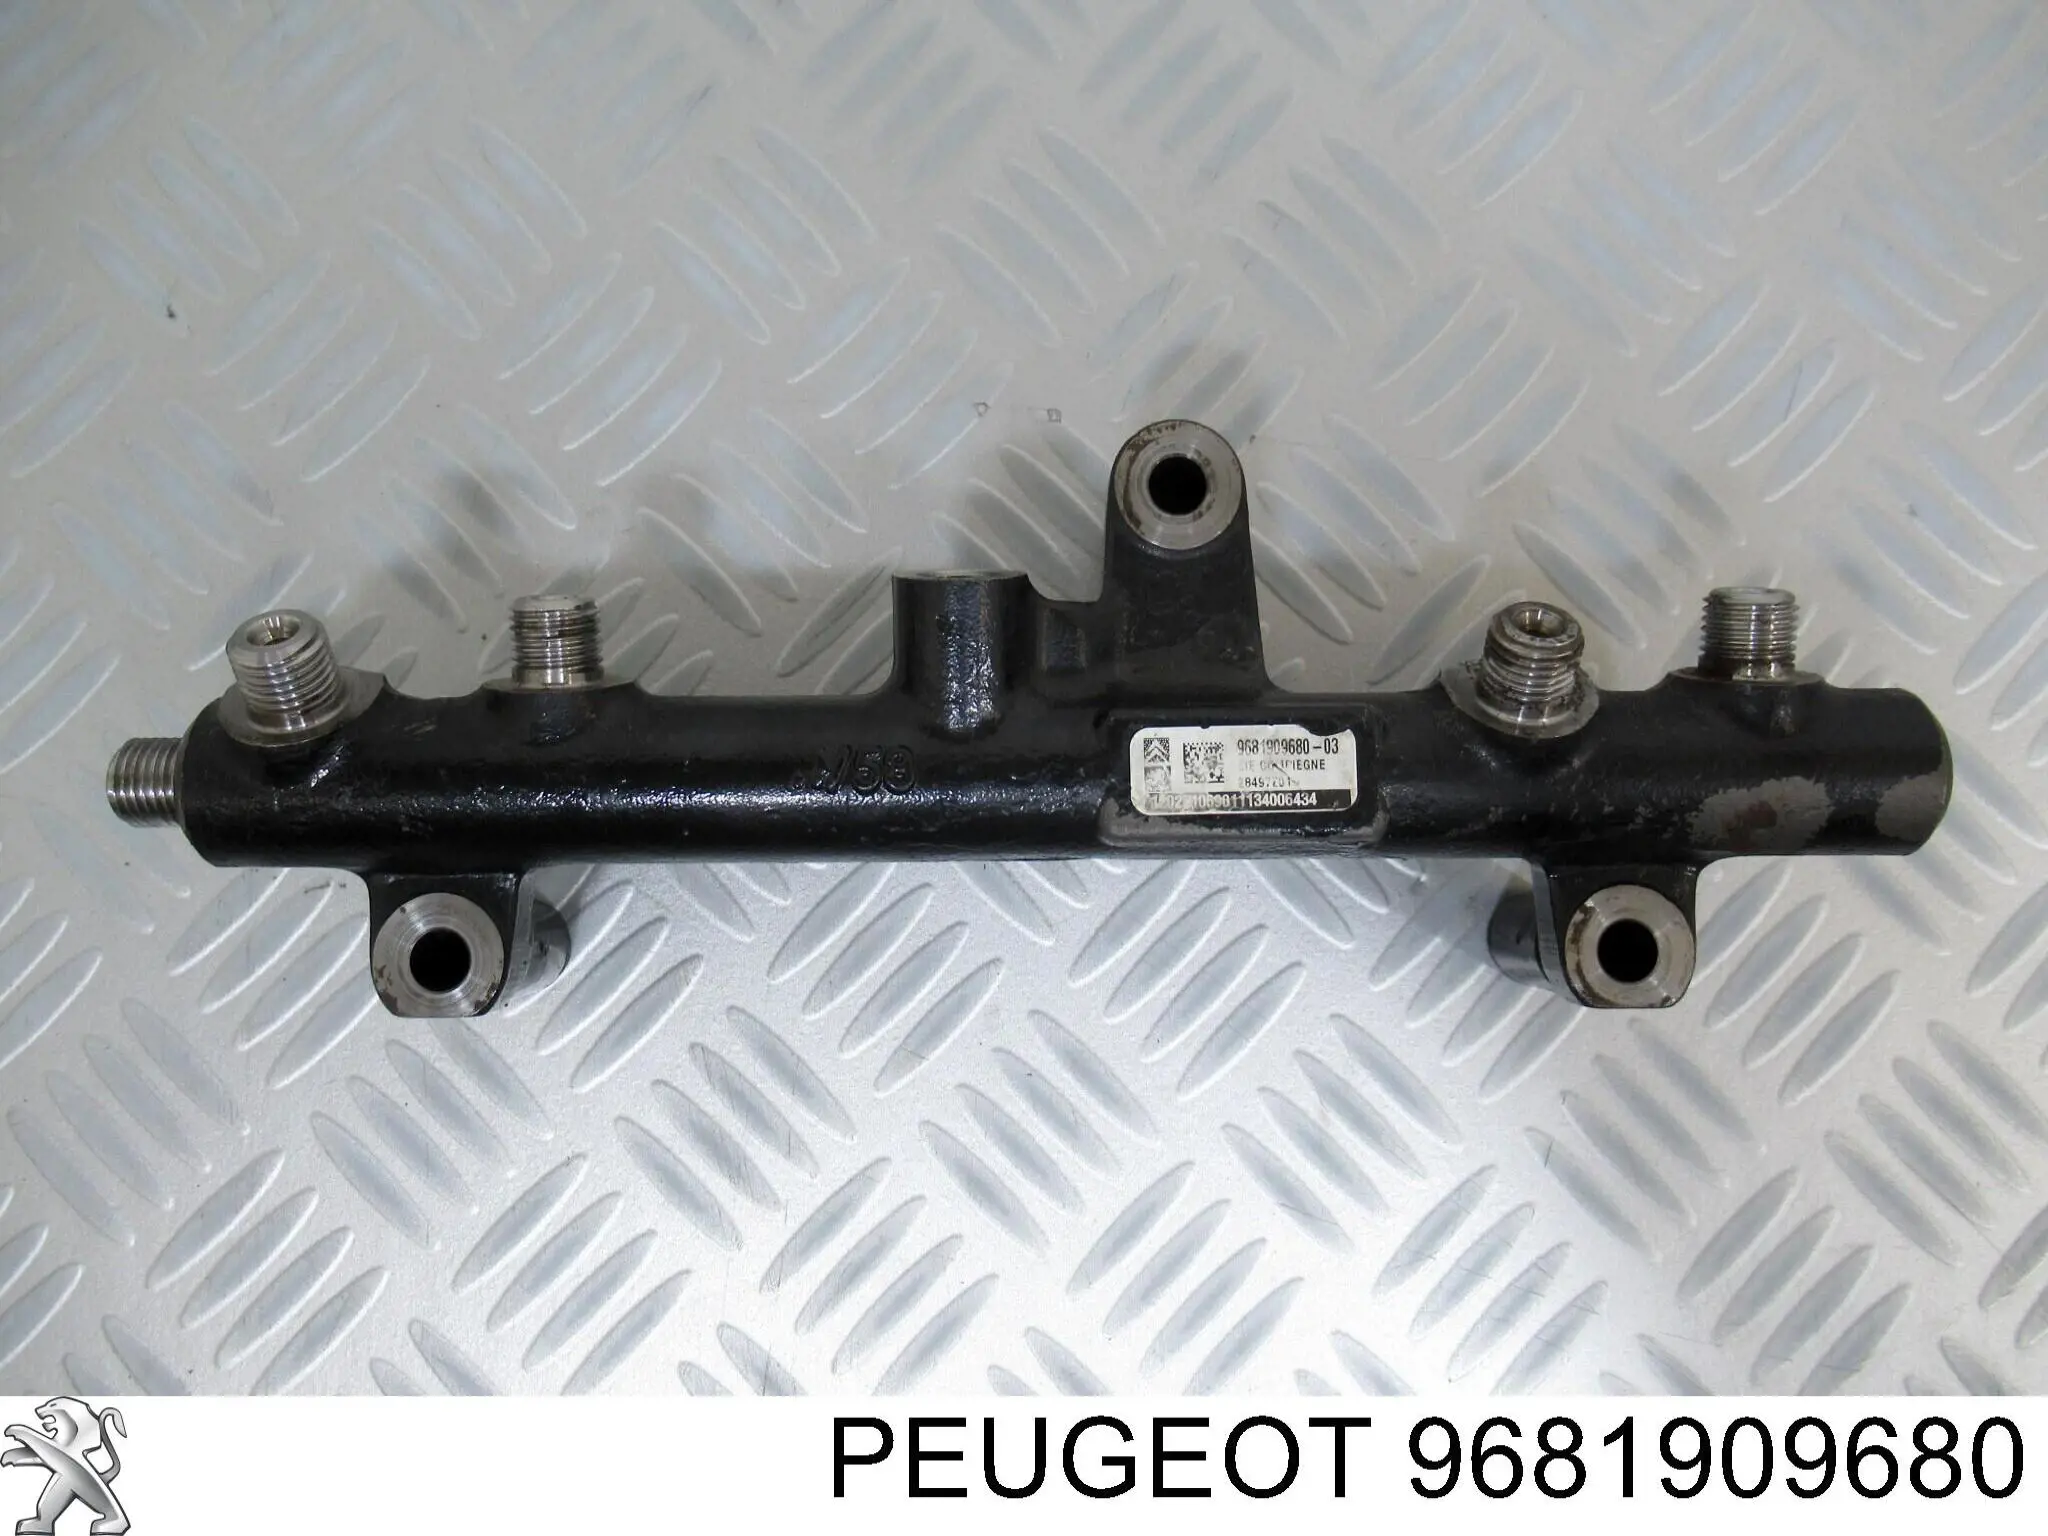 9681909680 Peugeot/Citroen rampa de inyectores